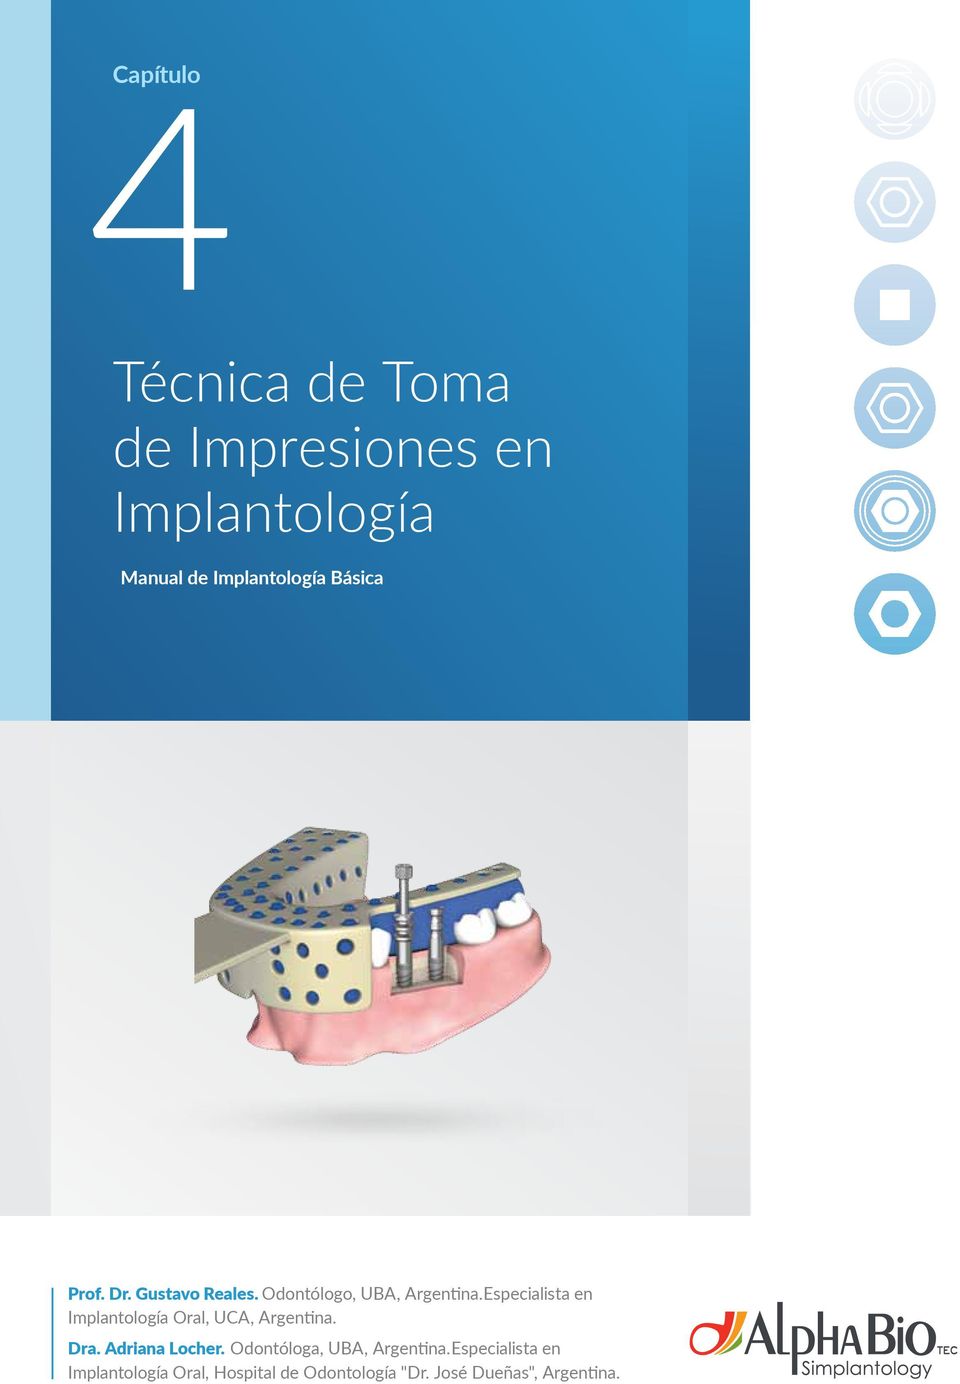 Especialista en Implantología Oral, UCA, Argentina. Dra. Adriana Locher.